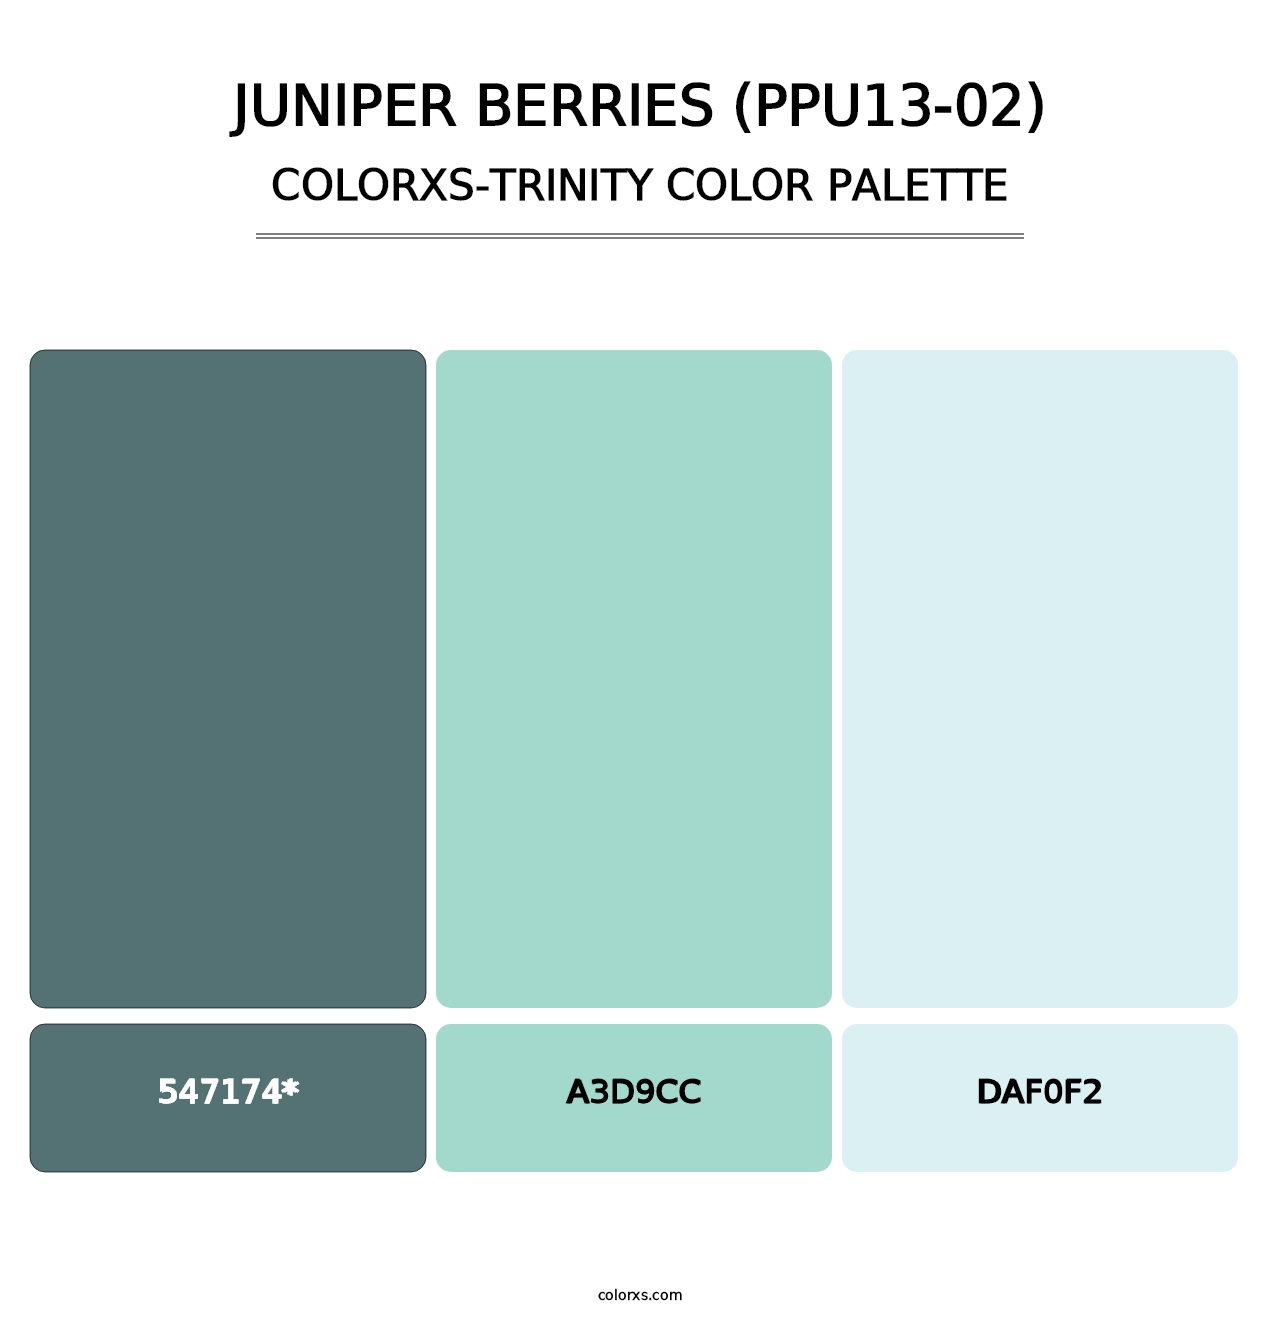 Juniper Berries (PPU13-02) - Colorxs Trinity Palette